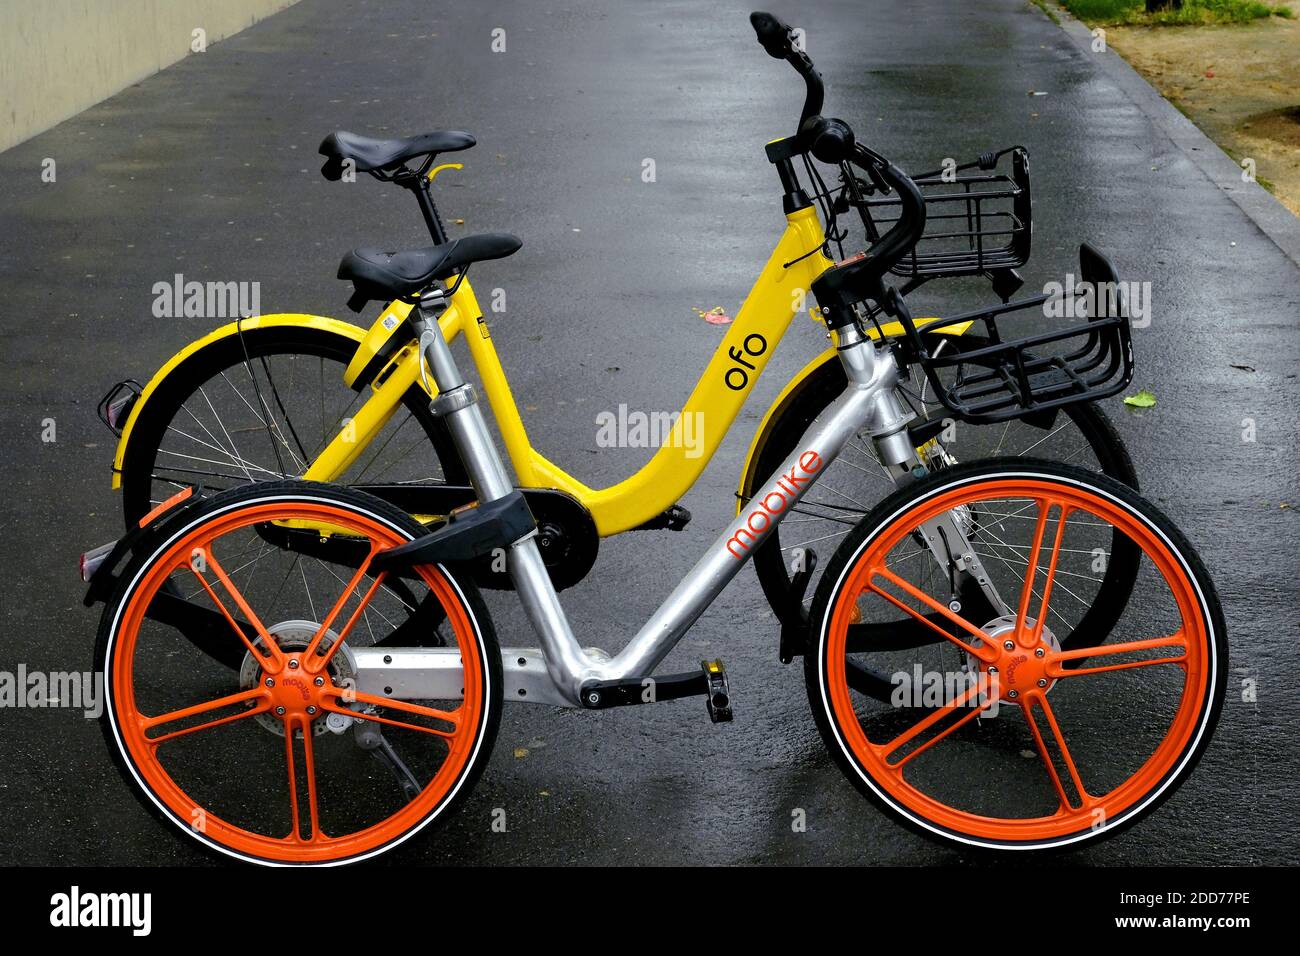 MOBIKE (naranja) bicicleta un servicio chino para compartir bicicletas,  estas bicicletas son accesibles y se pueden dejar en la calle.las bicicletas  que se alquilan a través de una aplicación que encuentra la